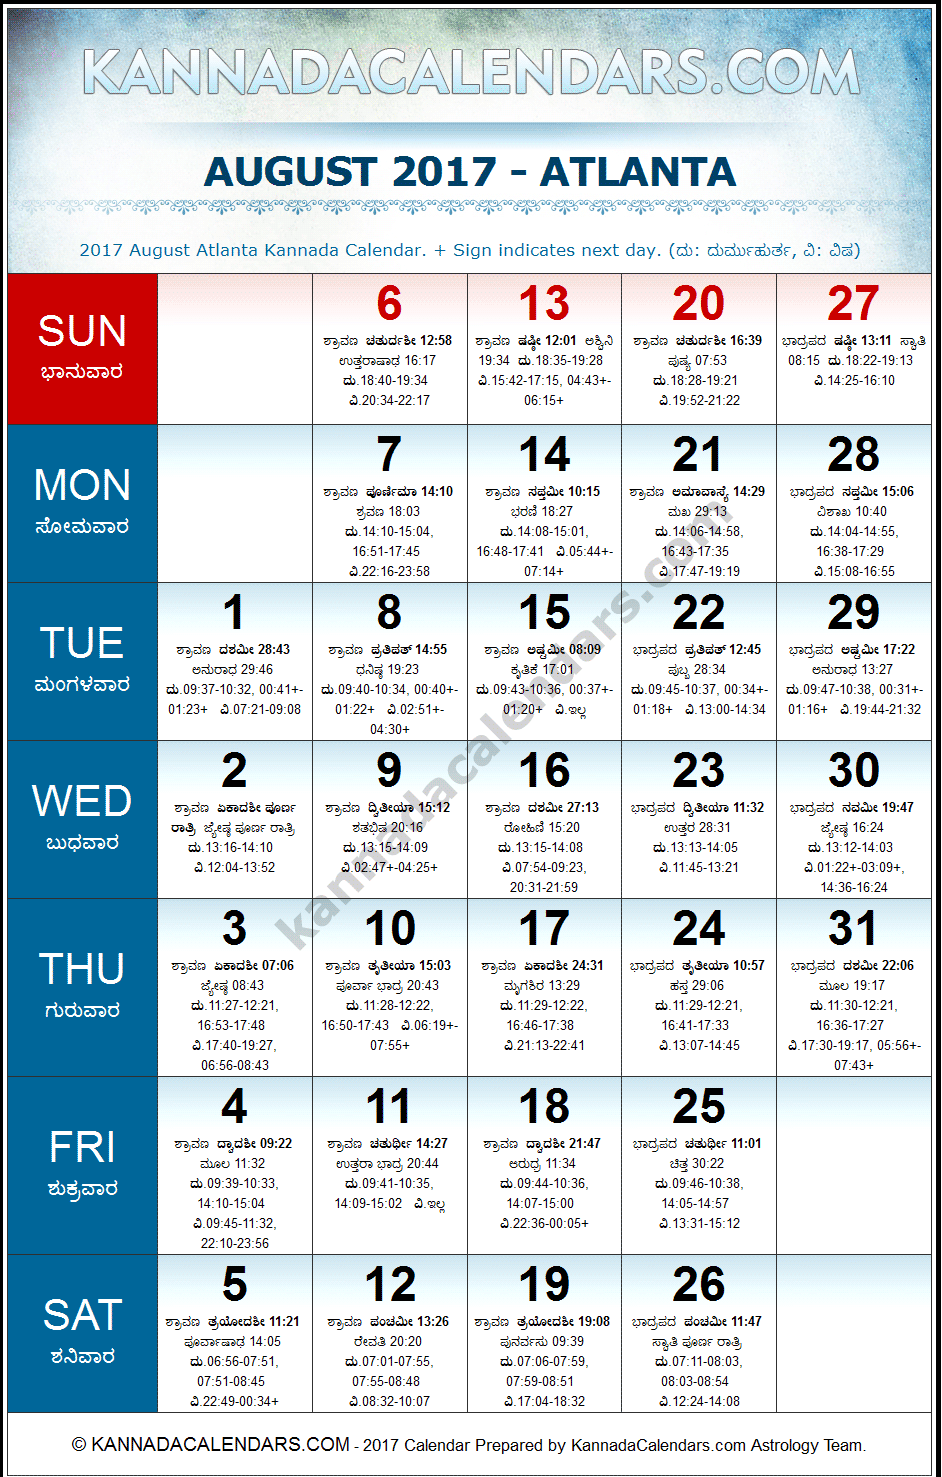 August 2017 Kannada Calendar for Atlanta, USA